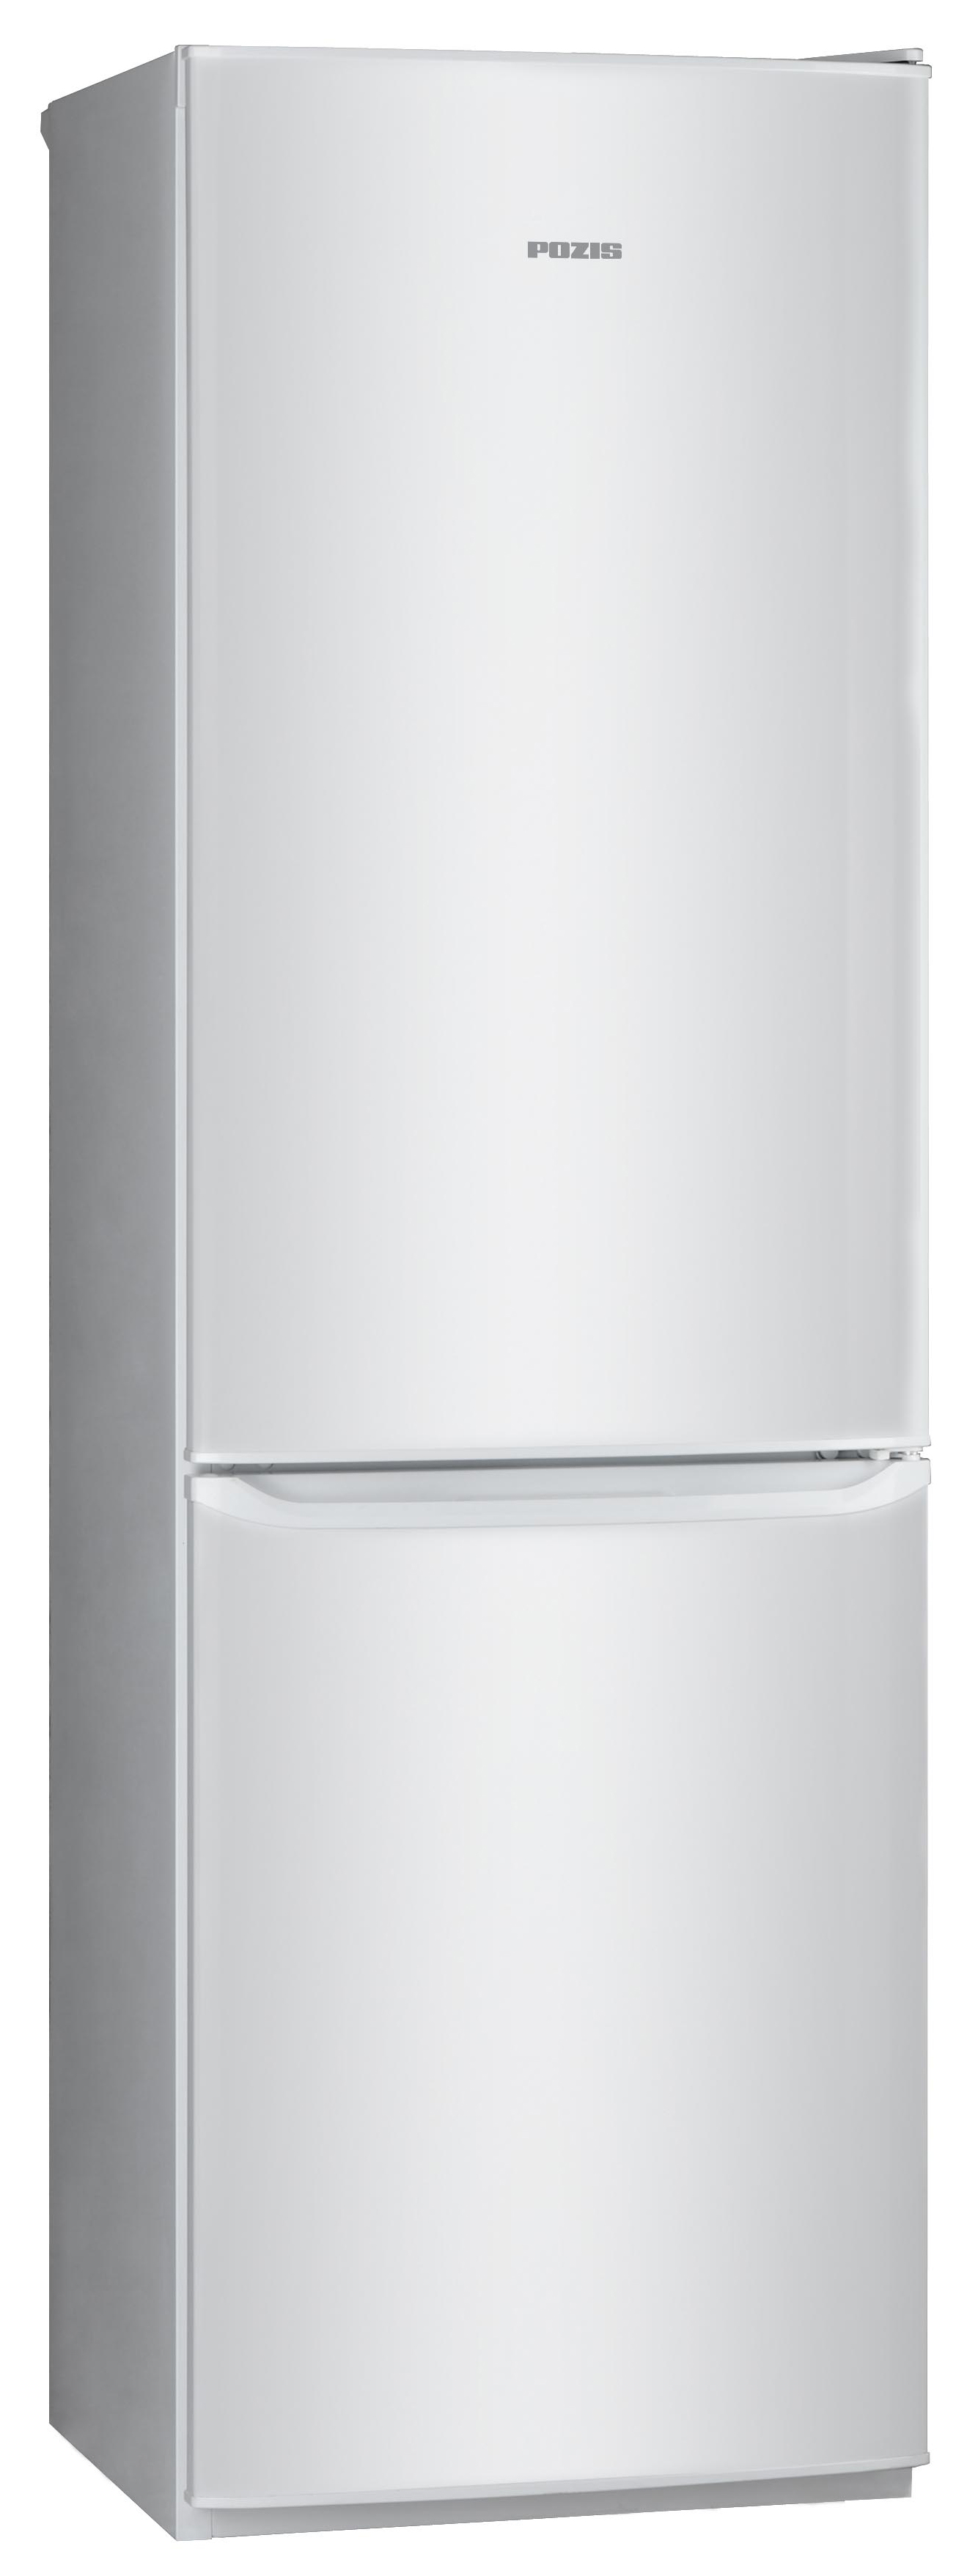 Холодильник POZIS RD-149 серебристый холодильник pozis rk 139